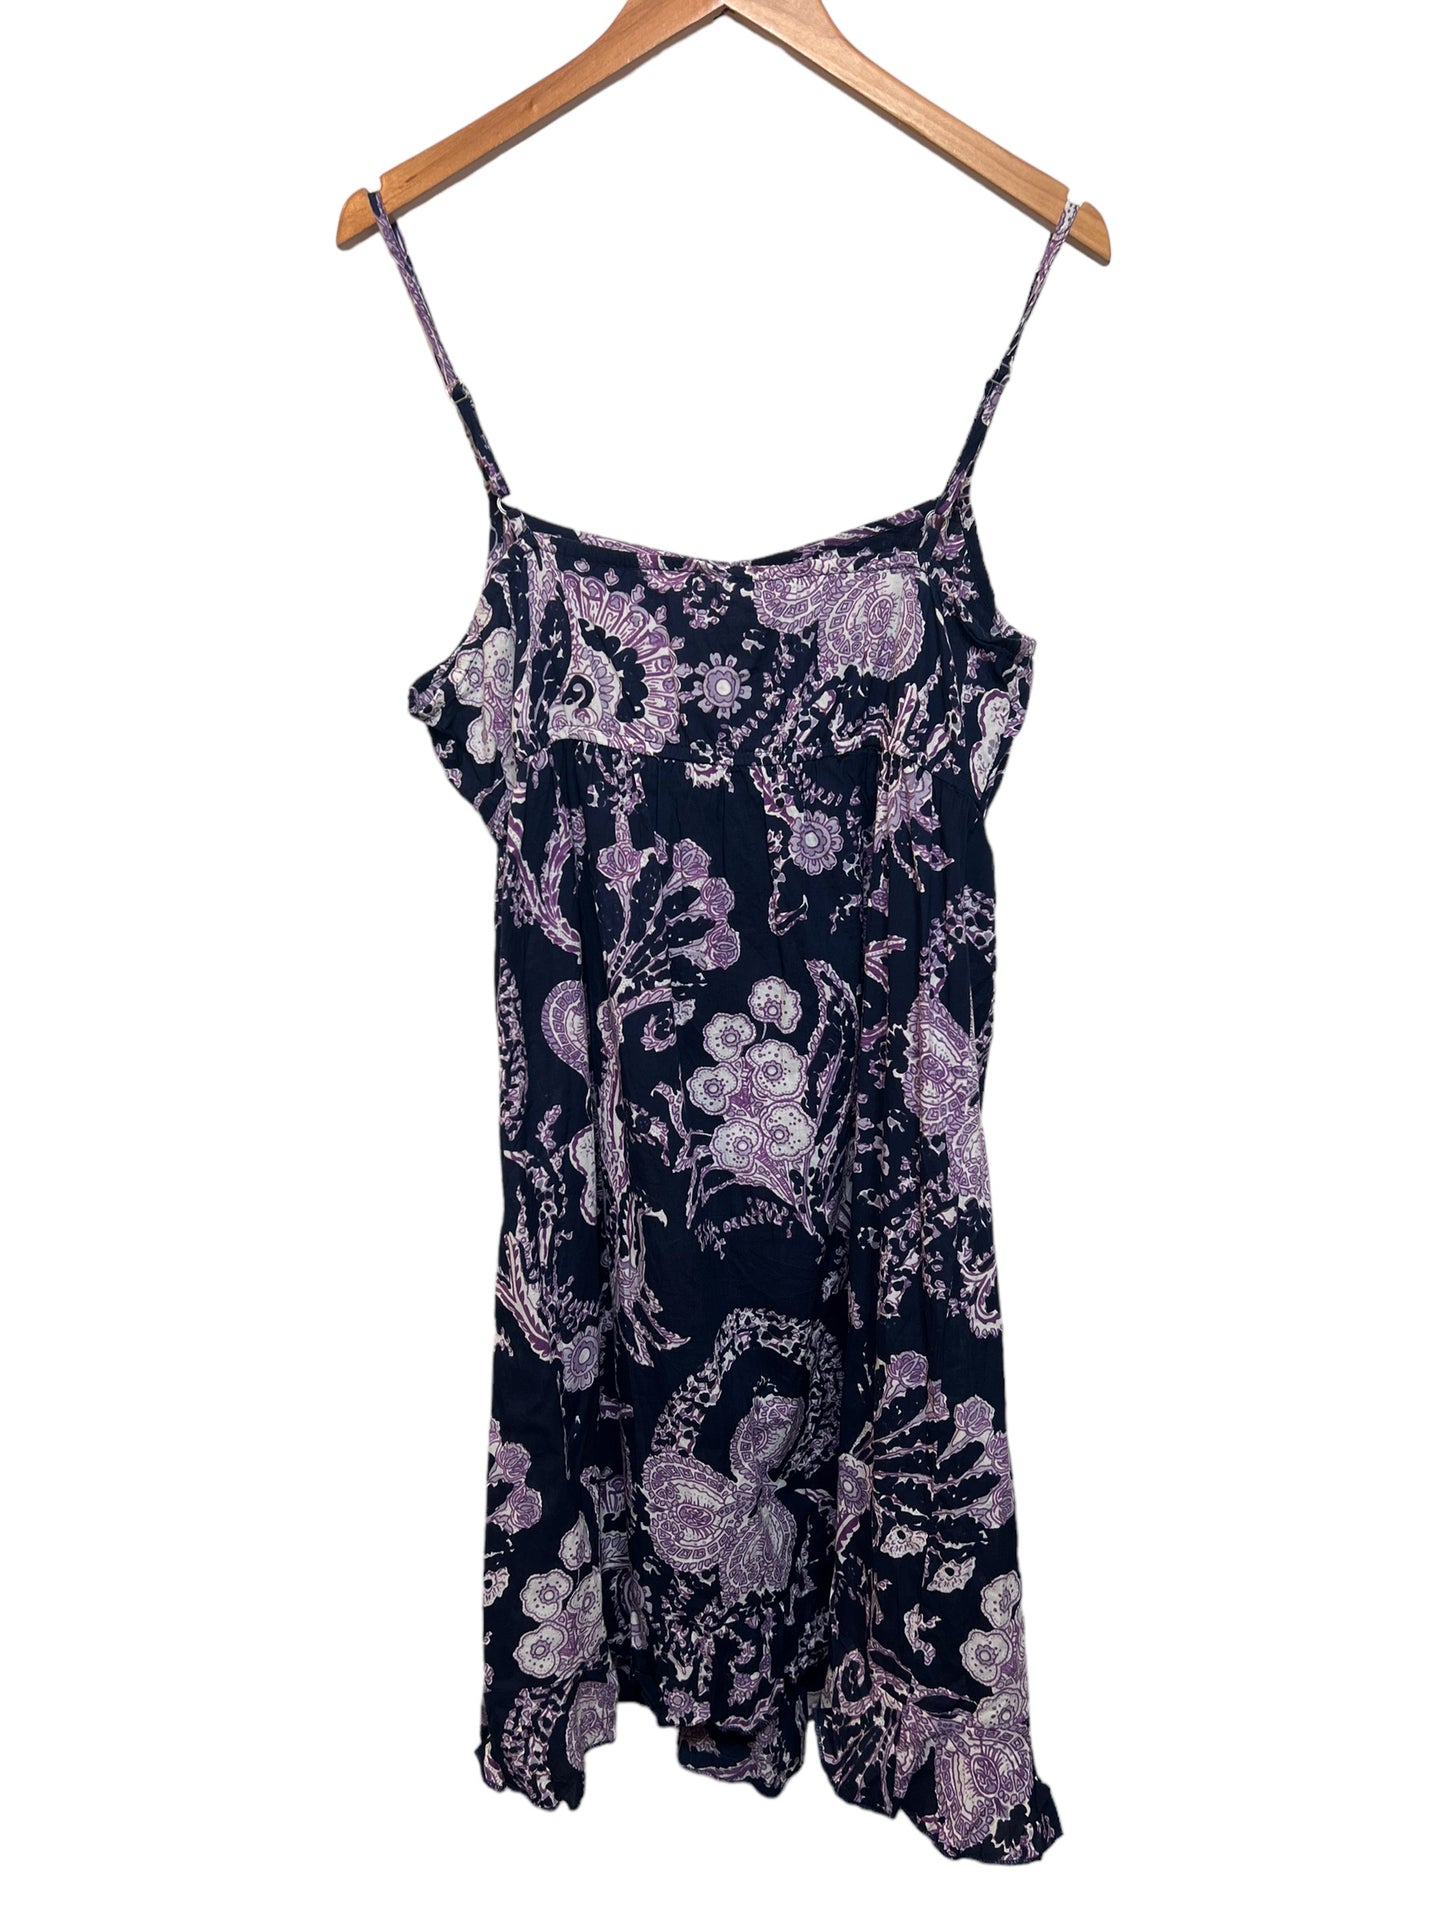 Women’s Dark Purple Floral Summer Dress (Size M)